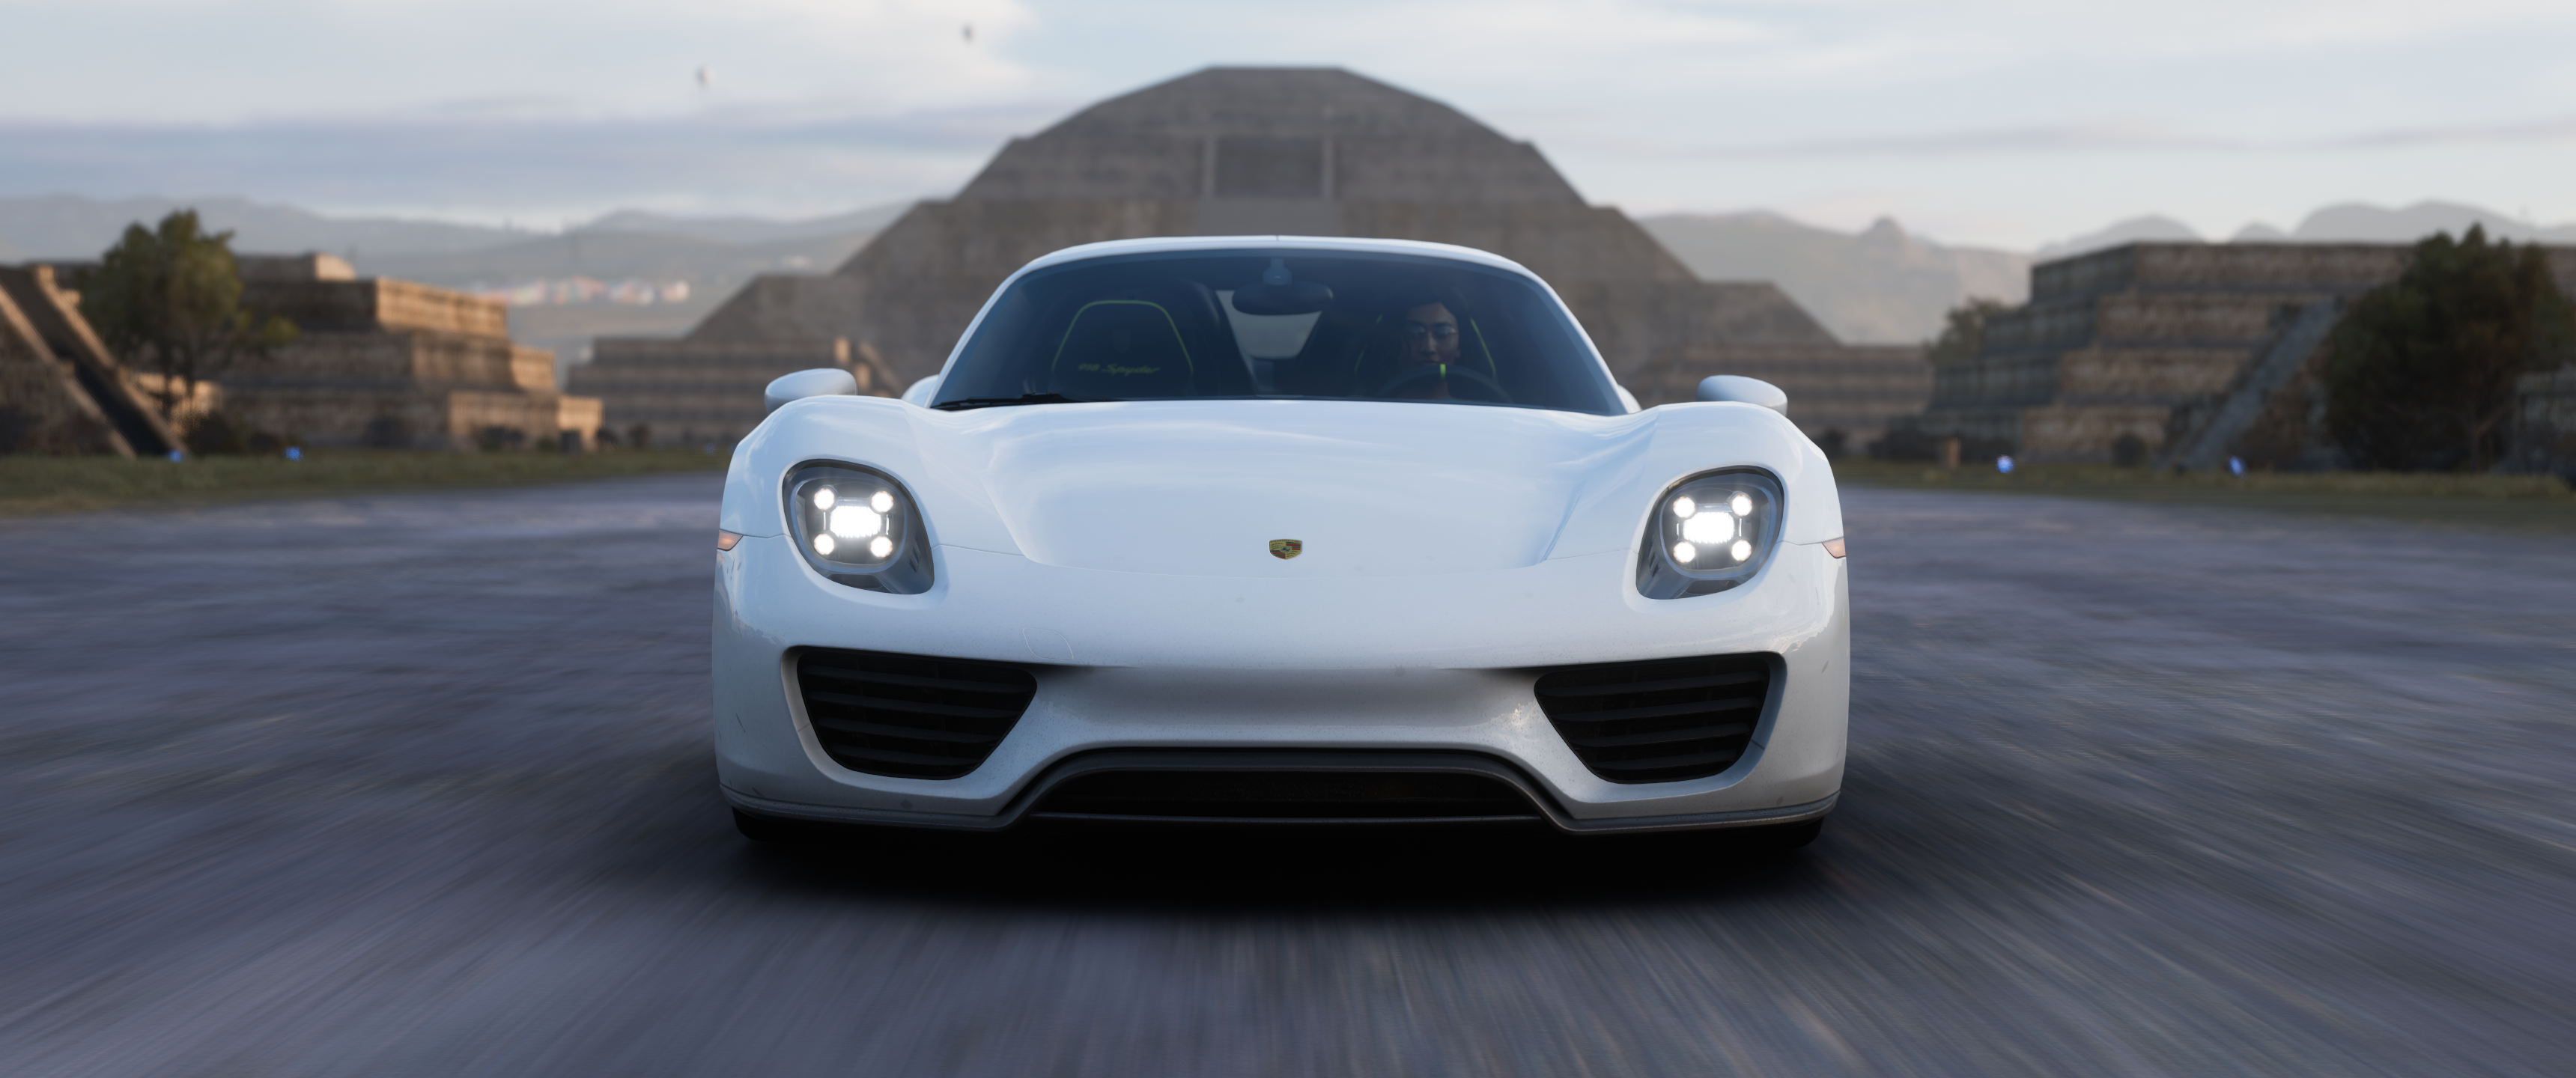 Forza Forza Horizon 5 Racing Car Ultrawide Video Games Porsche 918 Spyder 3440x1440